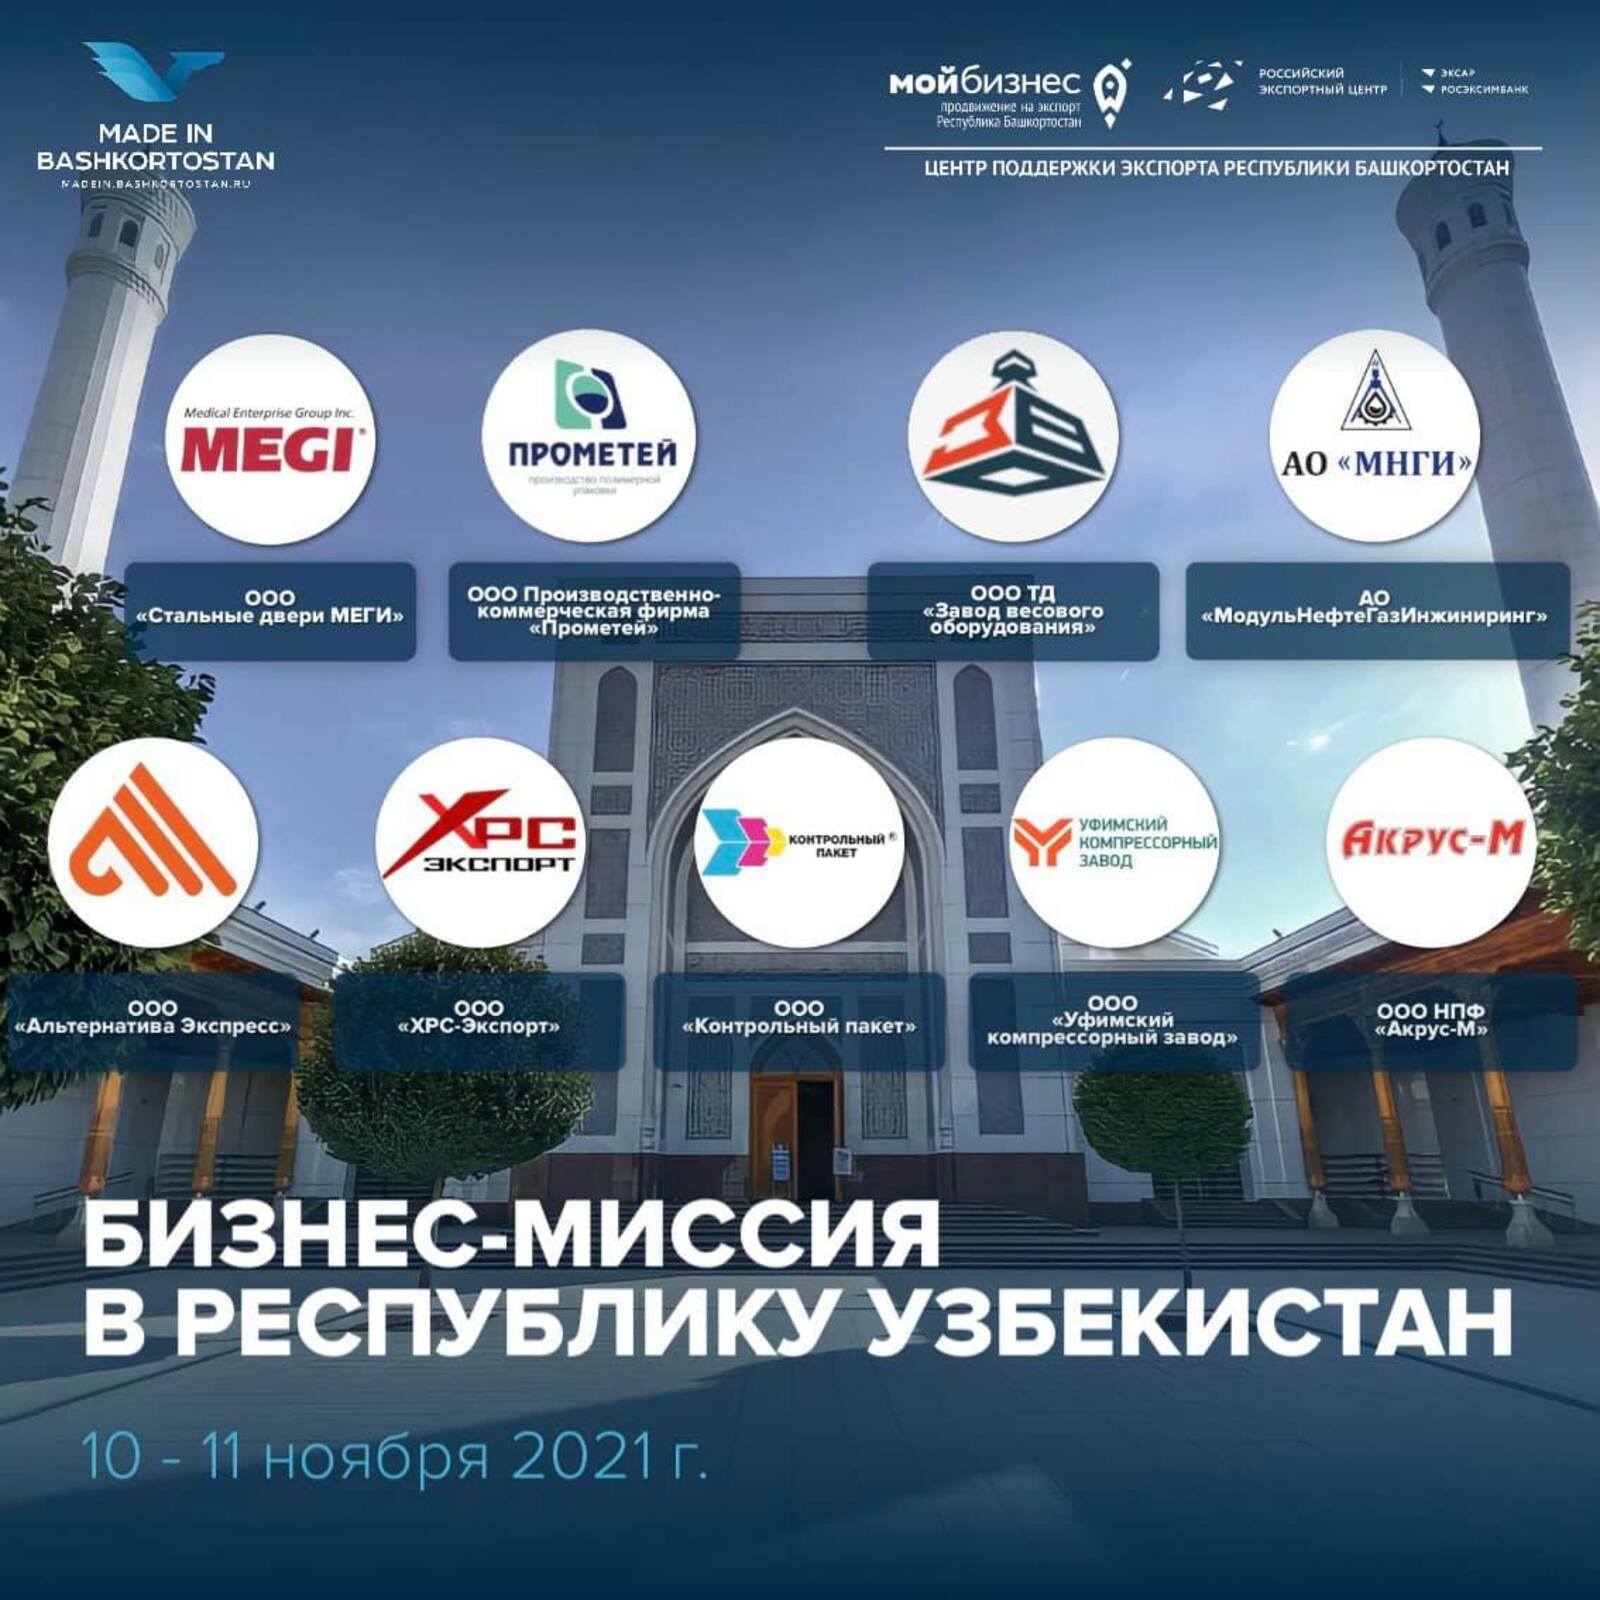 Нацпроект "Международная кооперация и экспорт". Бизнес-миссия в Республику Узбекистан